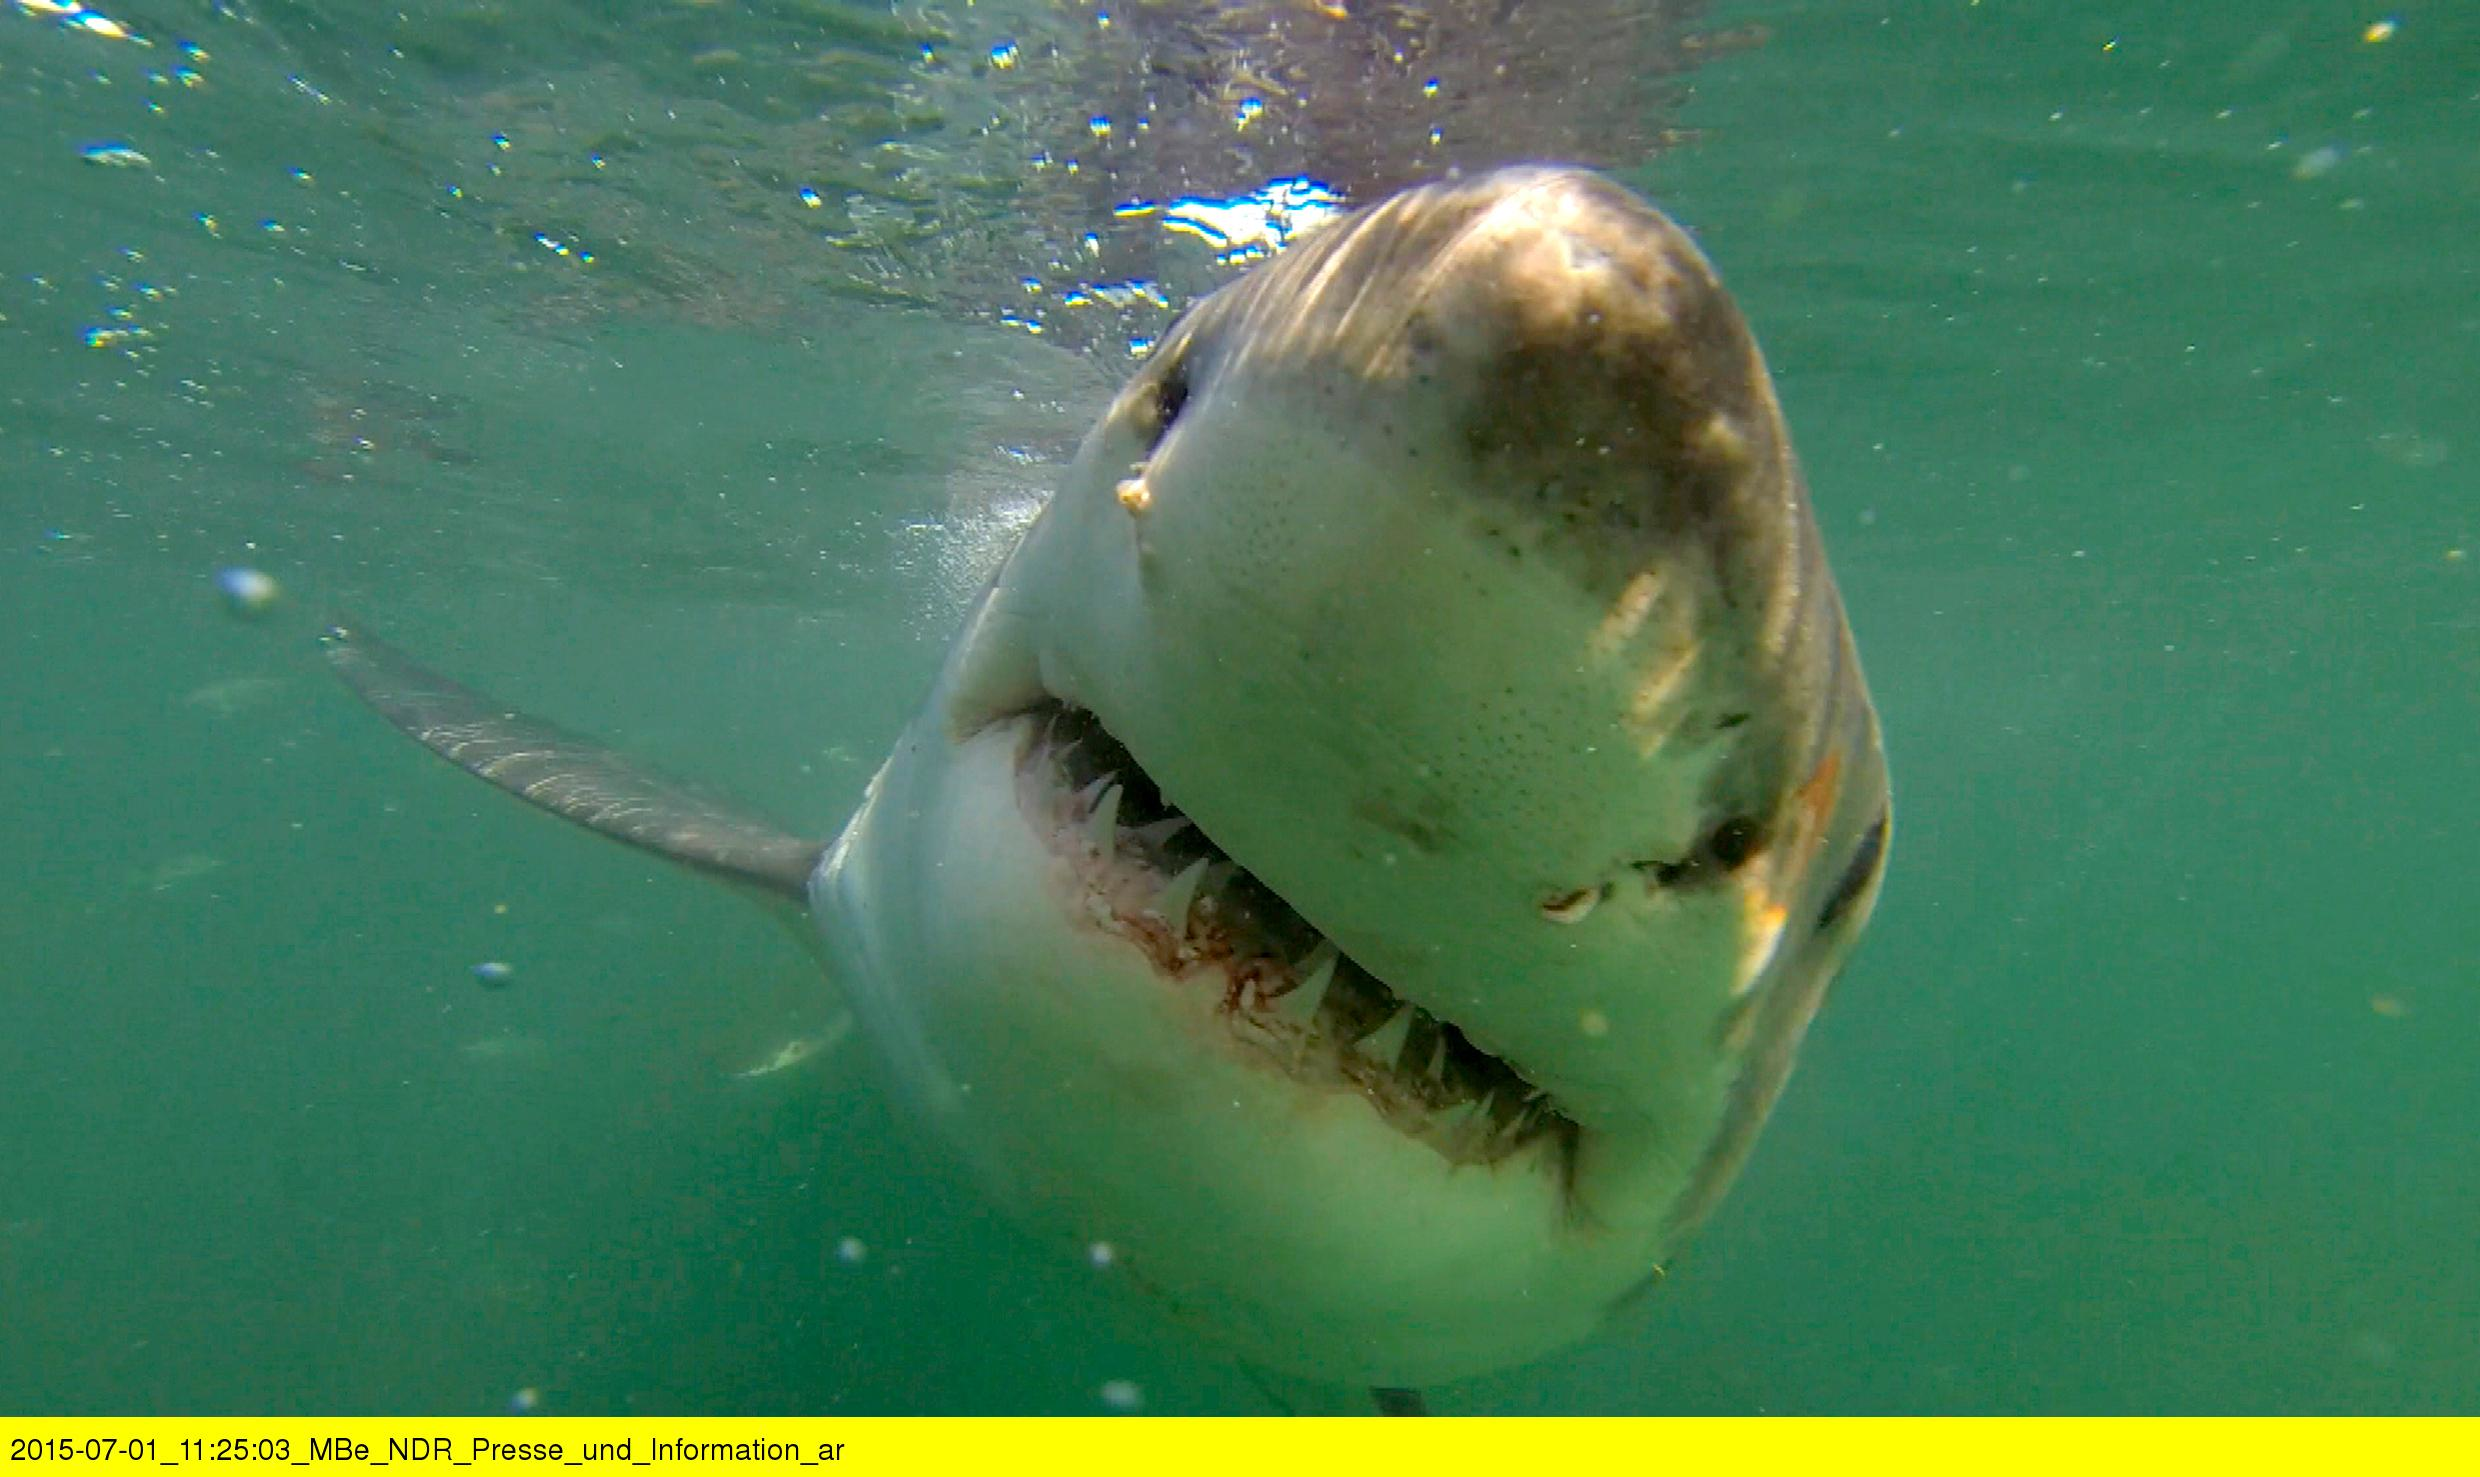 Fotoshooting mit dem Weißen Hai